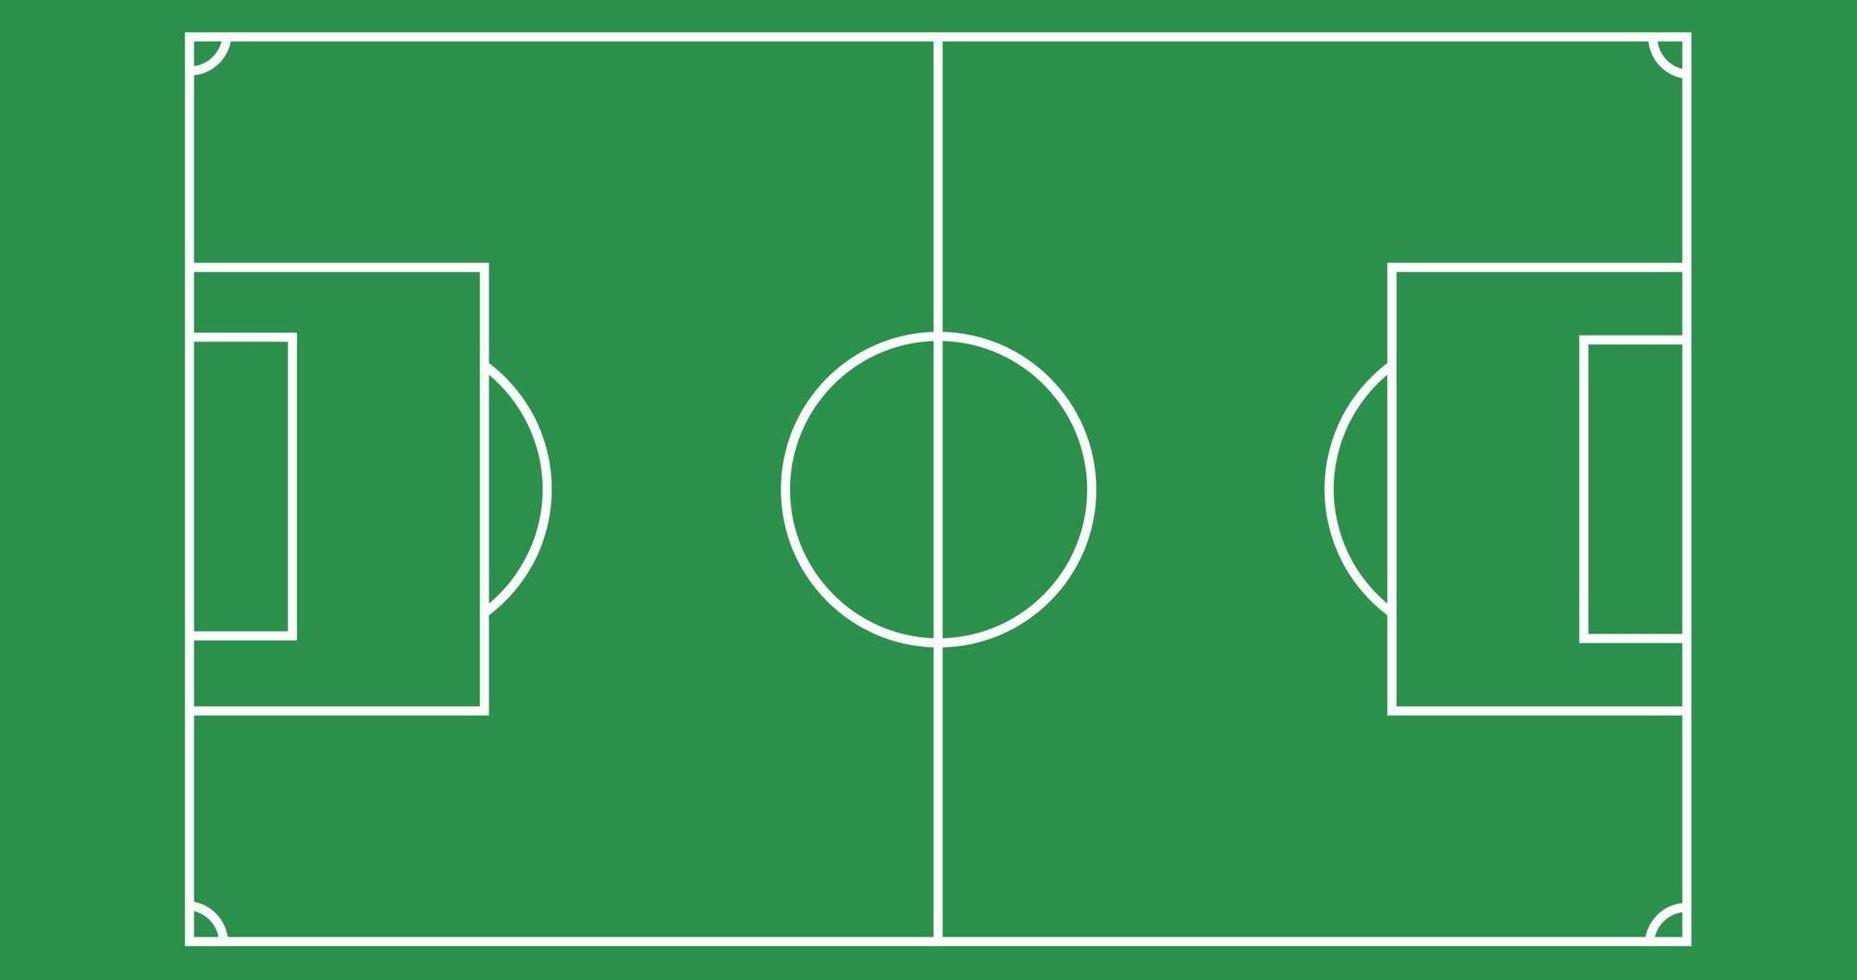 Amerikaans voetbal veld- achtergrond illustratie met gemakkelijk ontwerp en 4k grootte vector